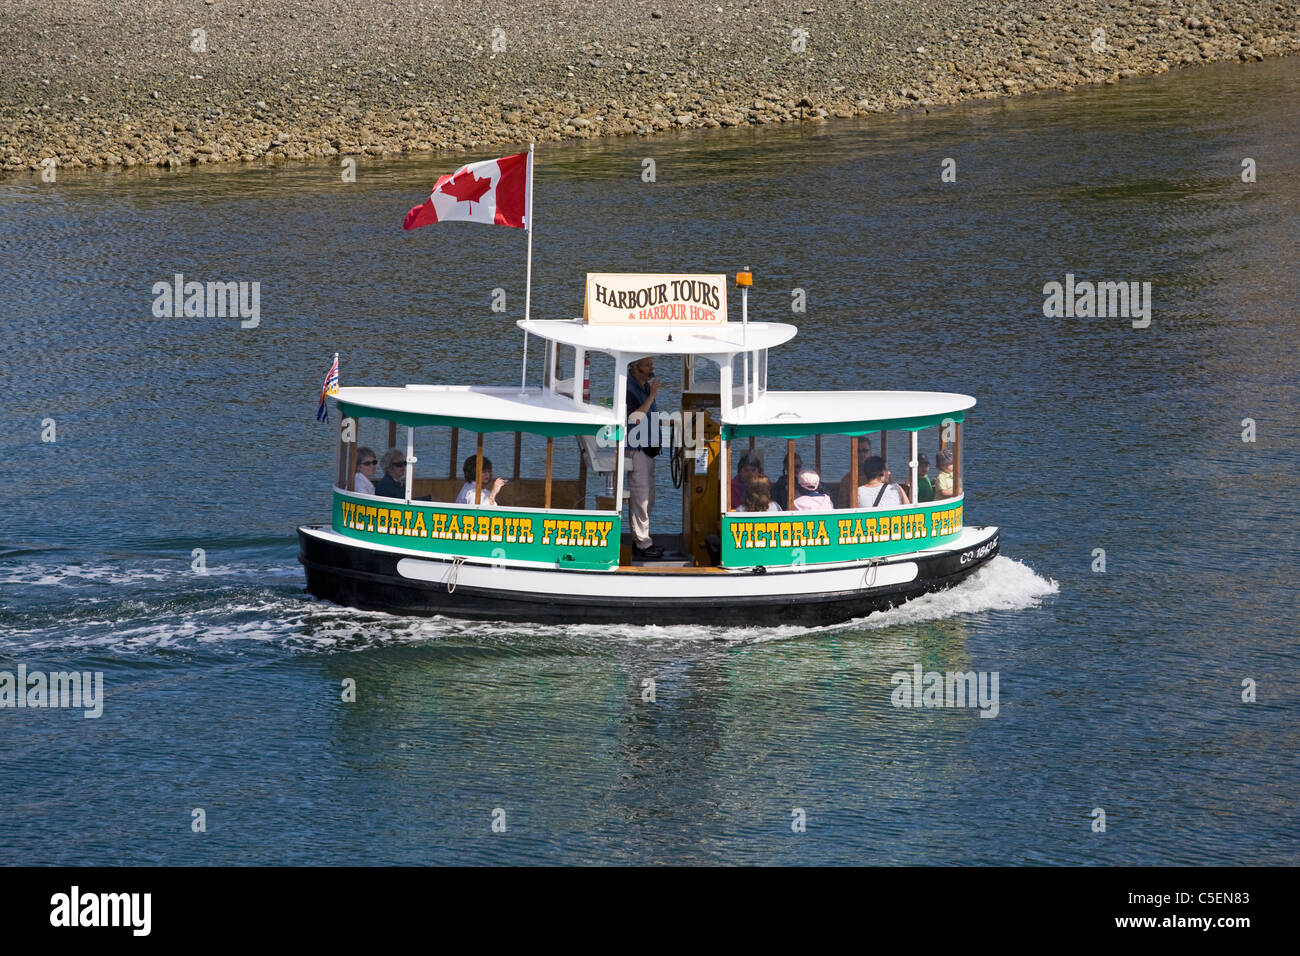 A harbor taxi in Victoria, British Columbia, Canada Stock Photo